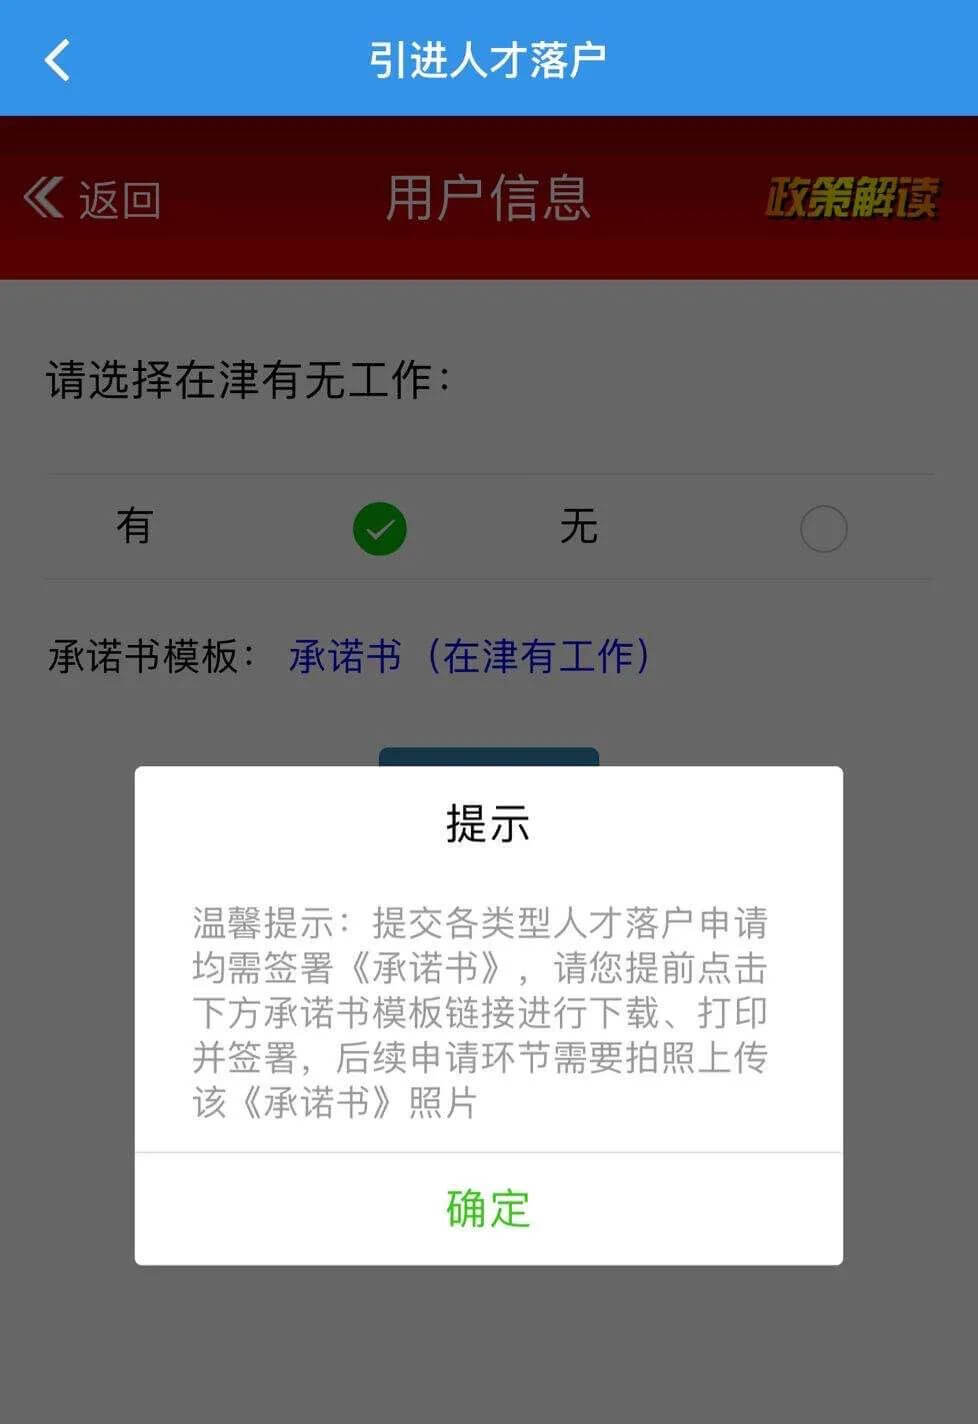 2022年天津学历人才在津无工作落户线上申请指南